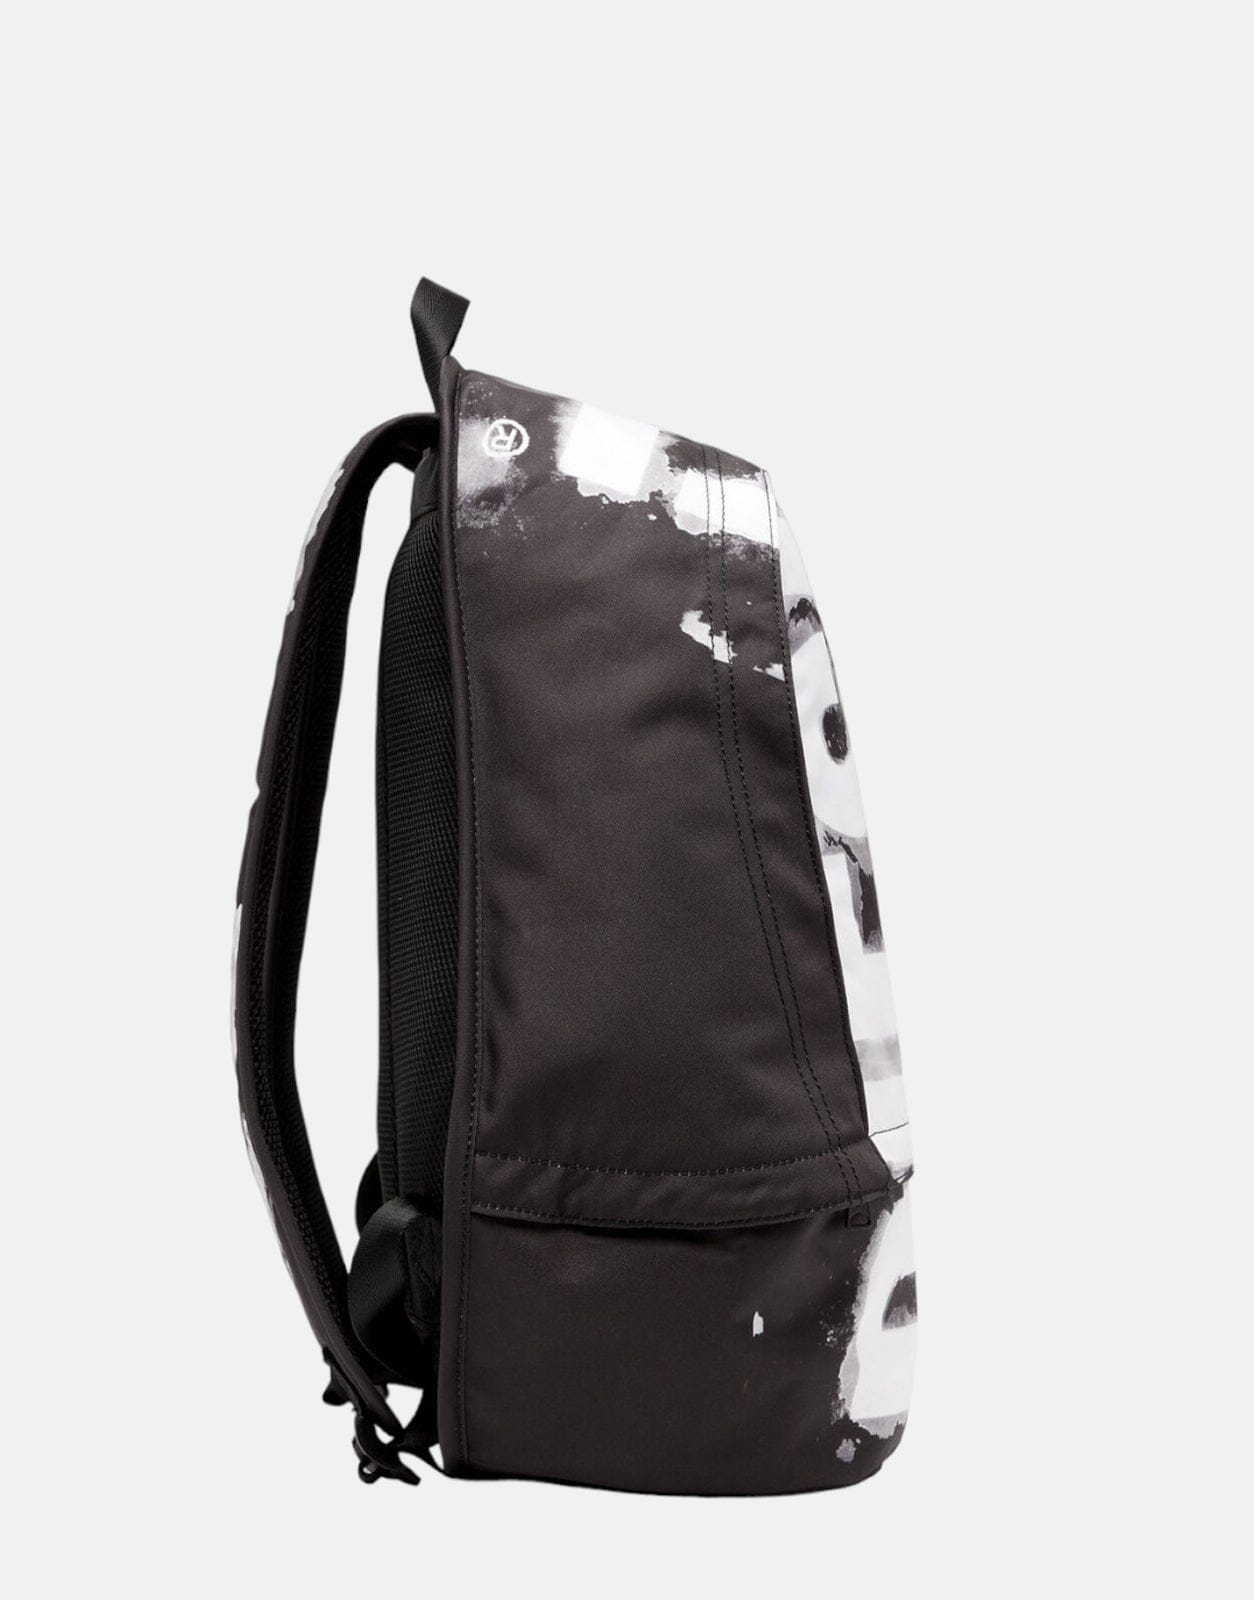 Diesel Rave Backpack - Subwear